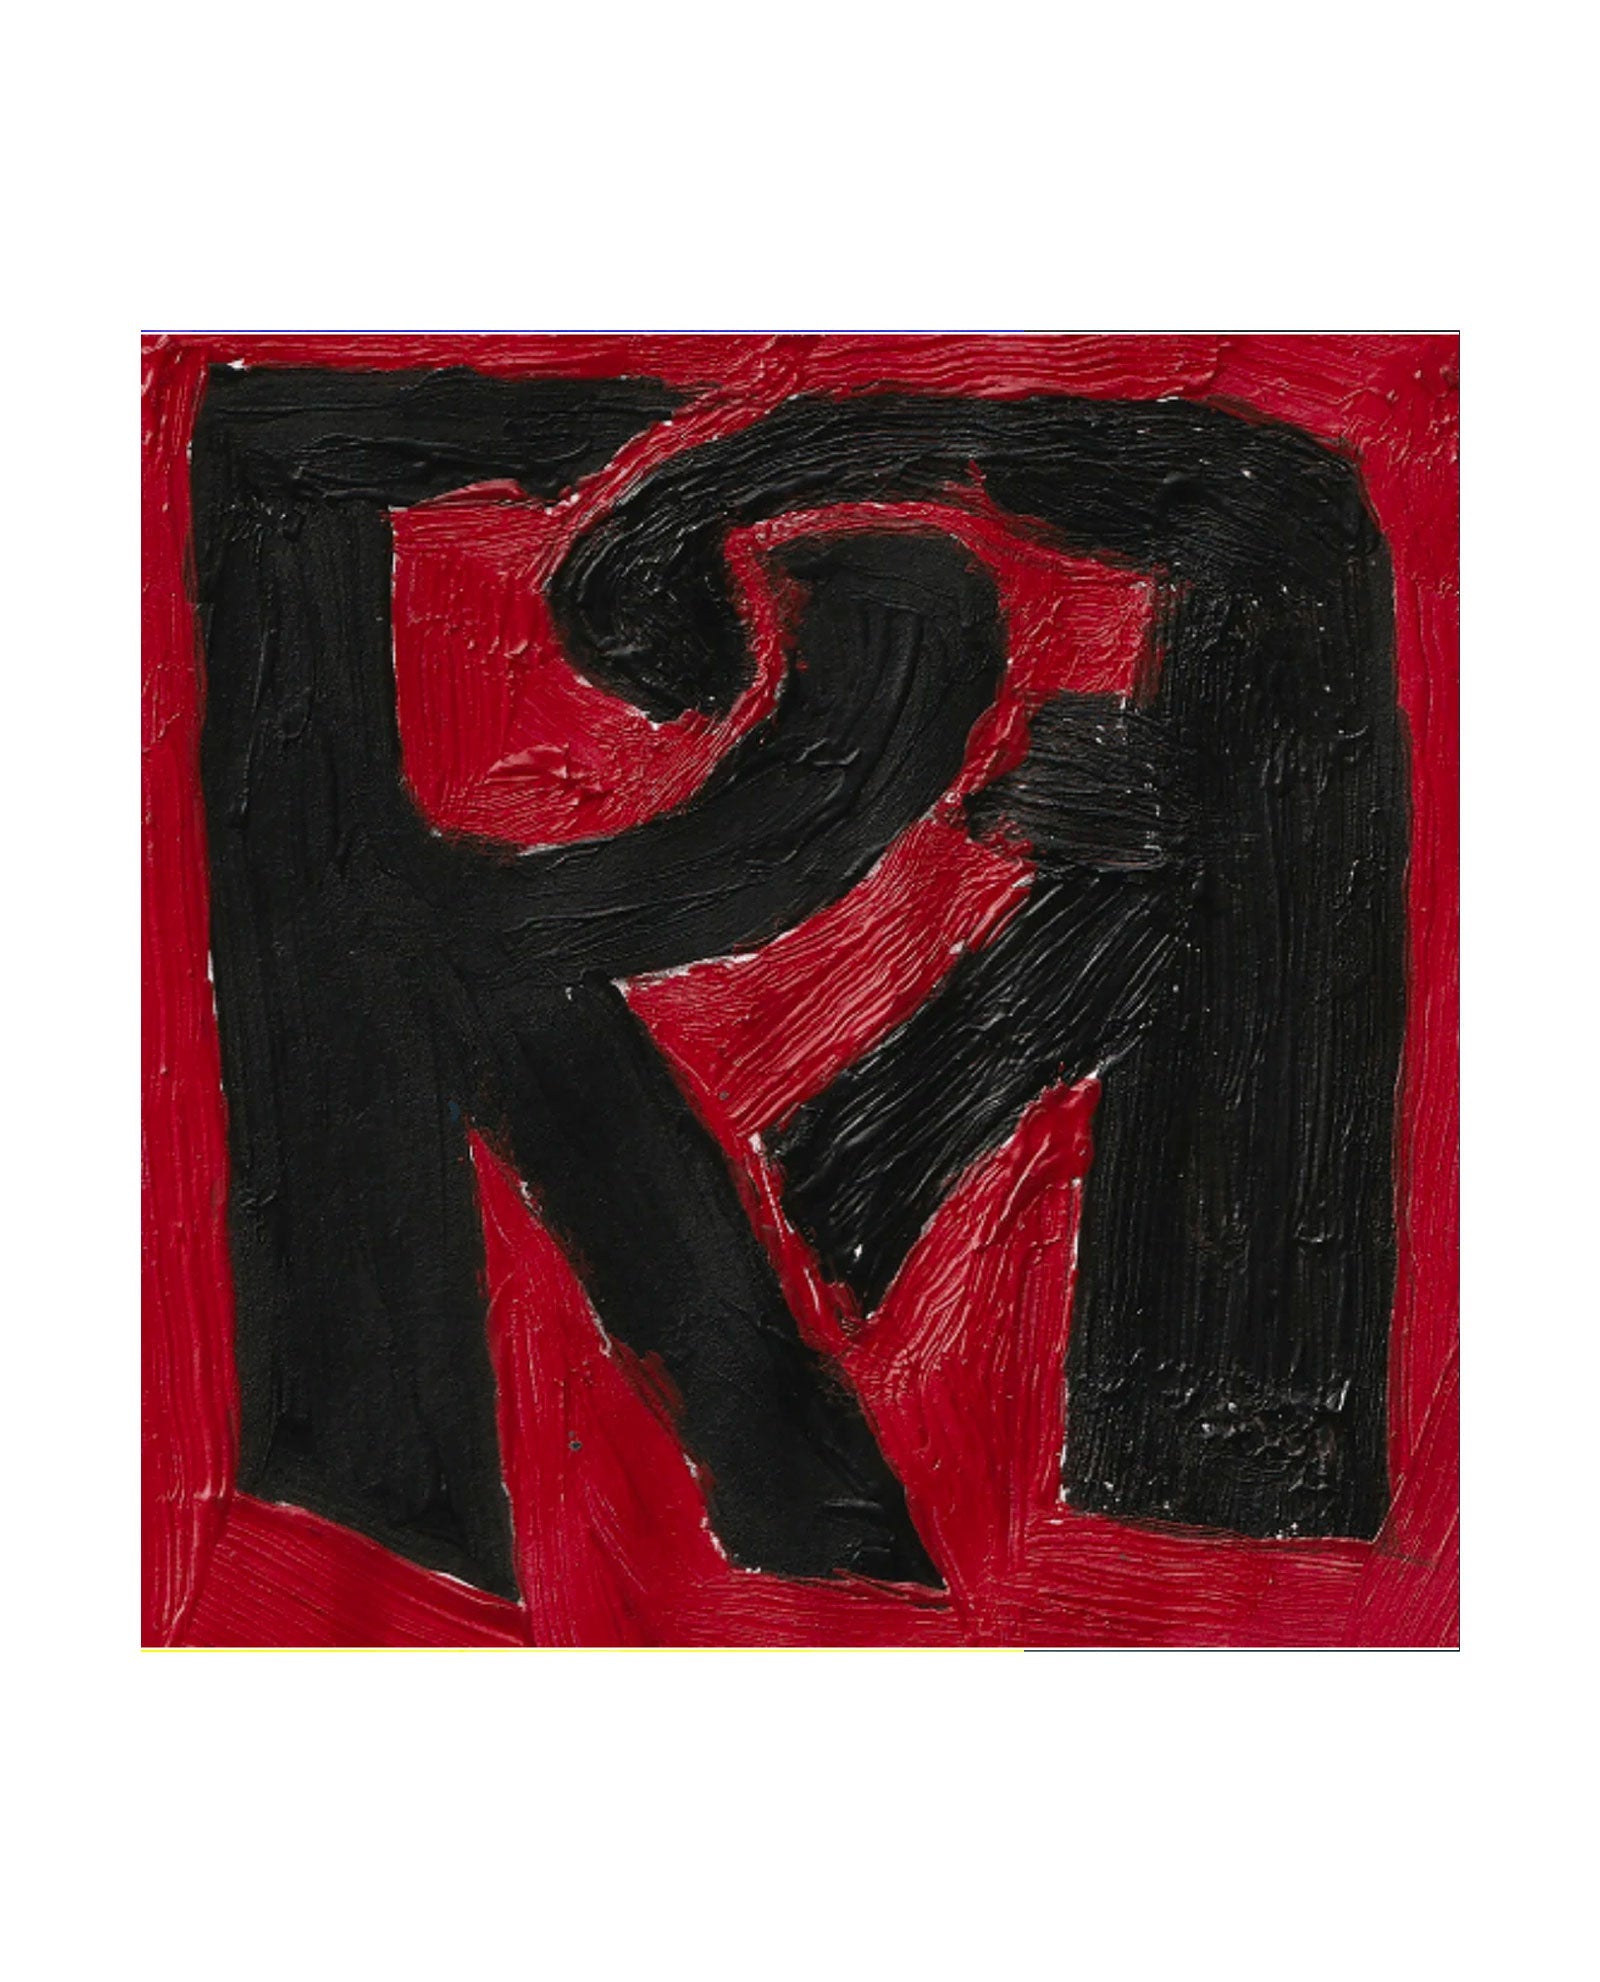 RR 12 Vinyl - Rosalía & Rauw Alejandro EN SMFSTORE